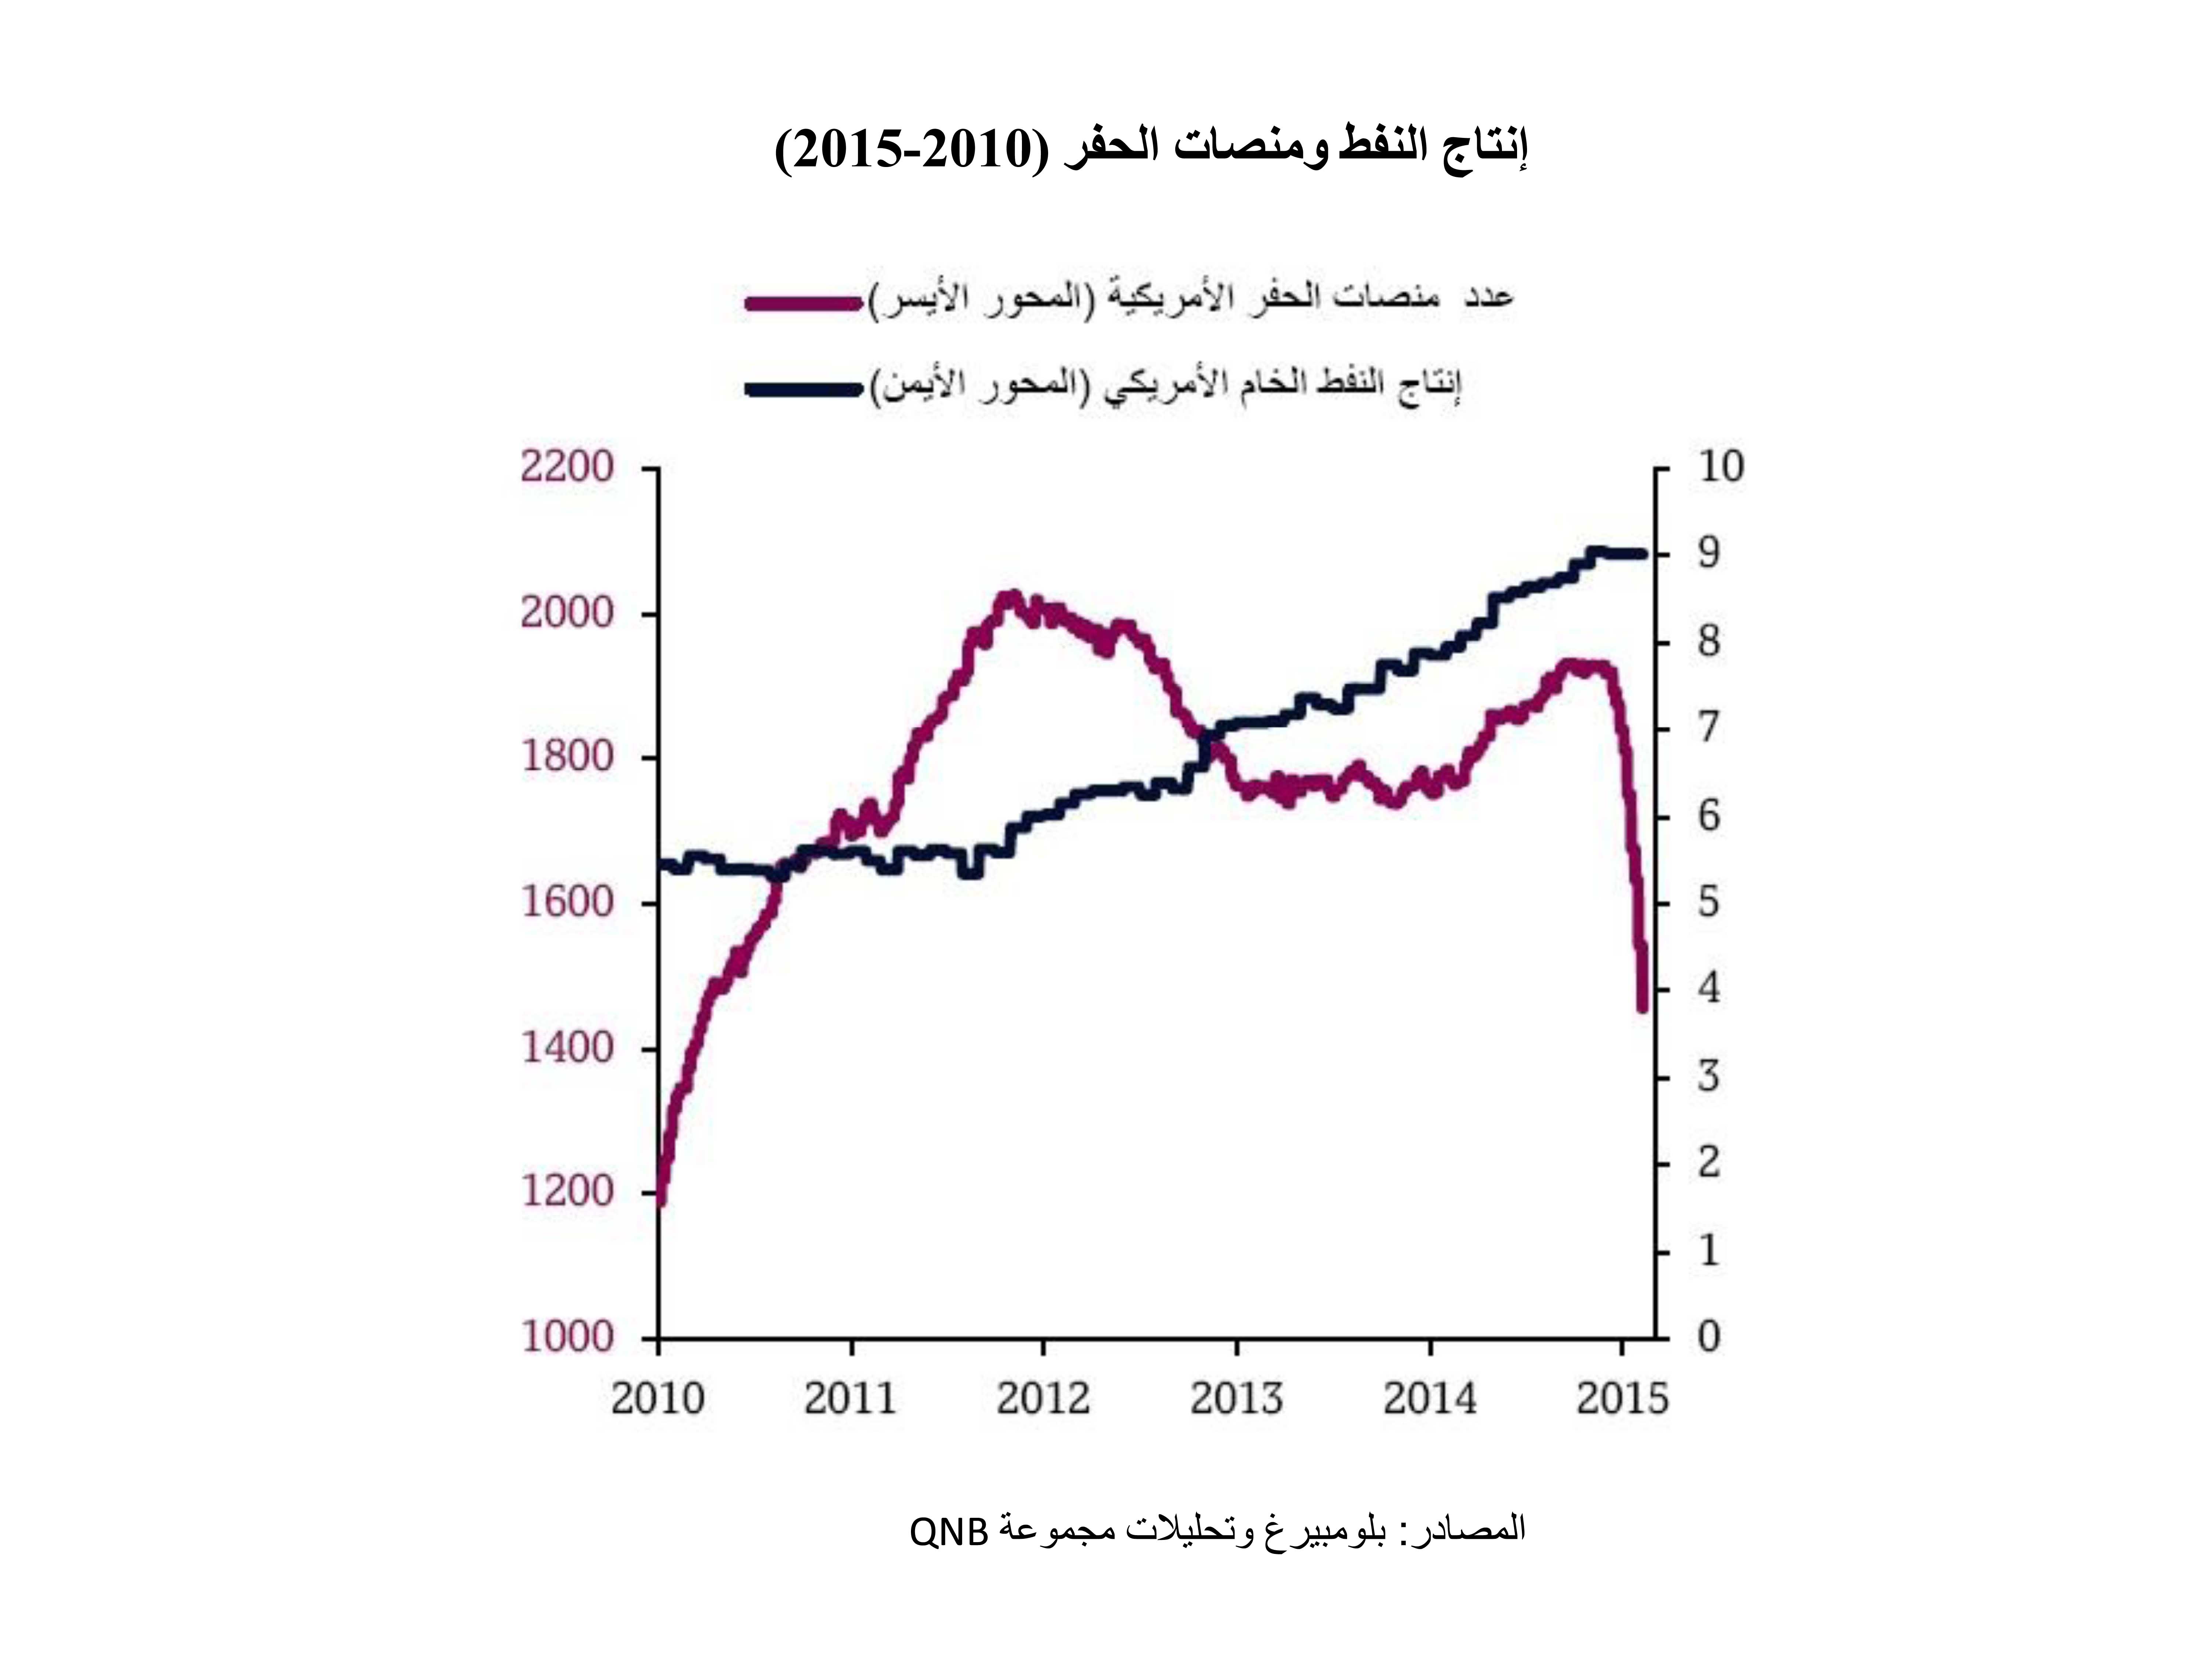 إنتاج النفط ومنصات الحفر (2010-2015)